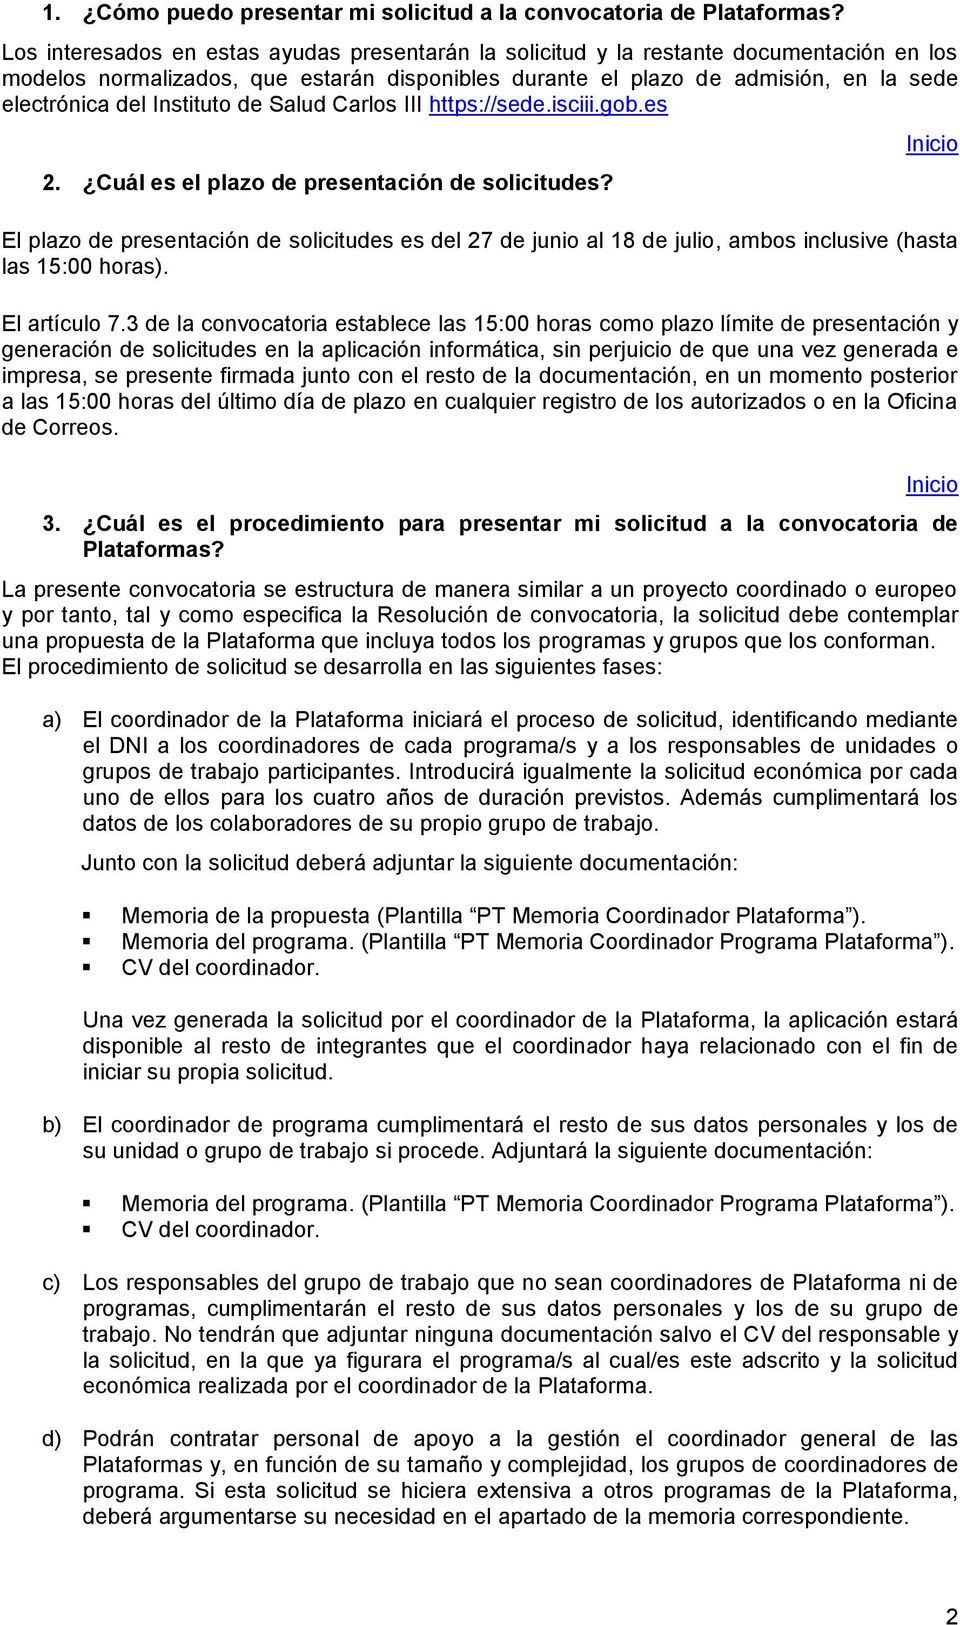 Instituto de Salud Carlos III https://sede.isciii.gob.es 2. Cuál es el plazo de presentación de solicitudes?